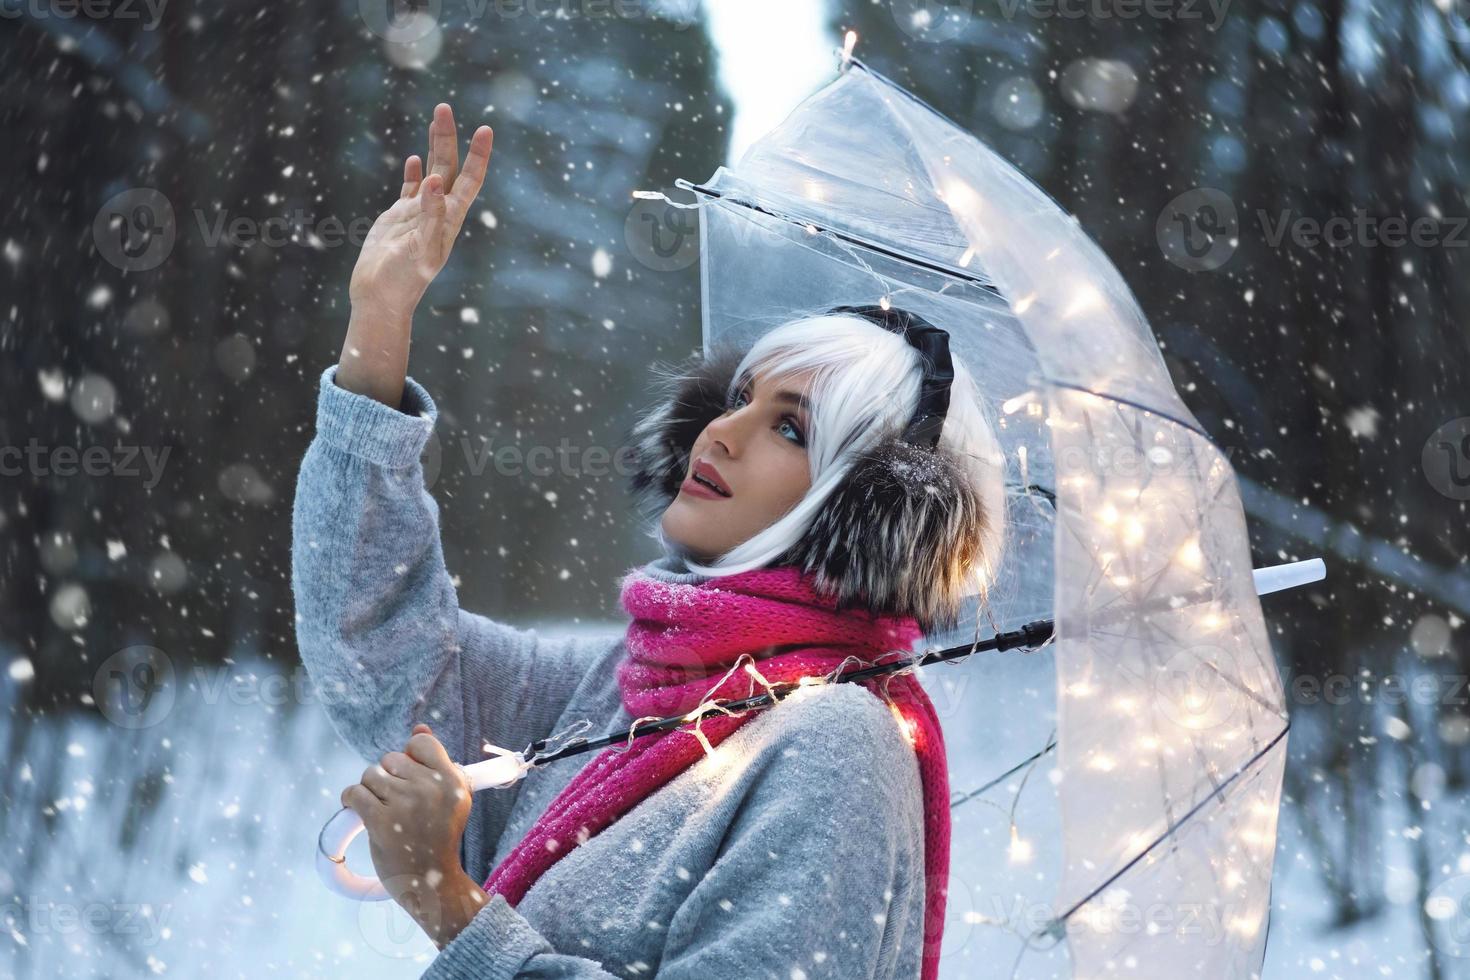 jovem andando sob guarda-chuva transparente no dia de inverno nevado foto